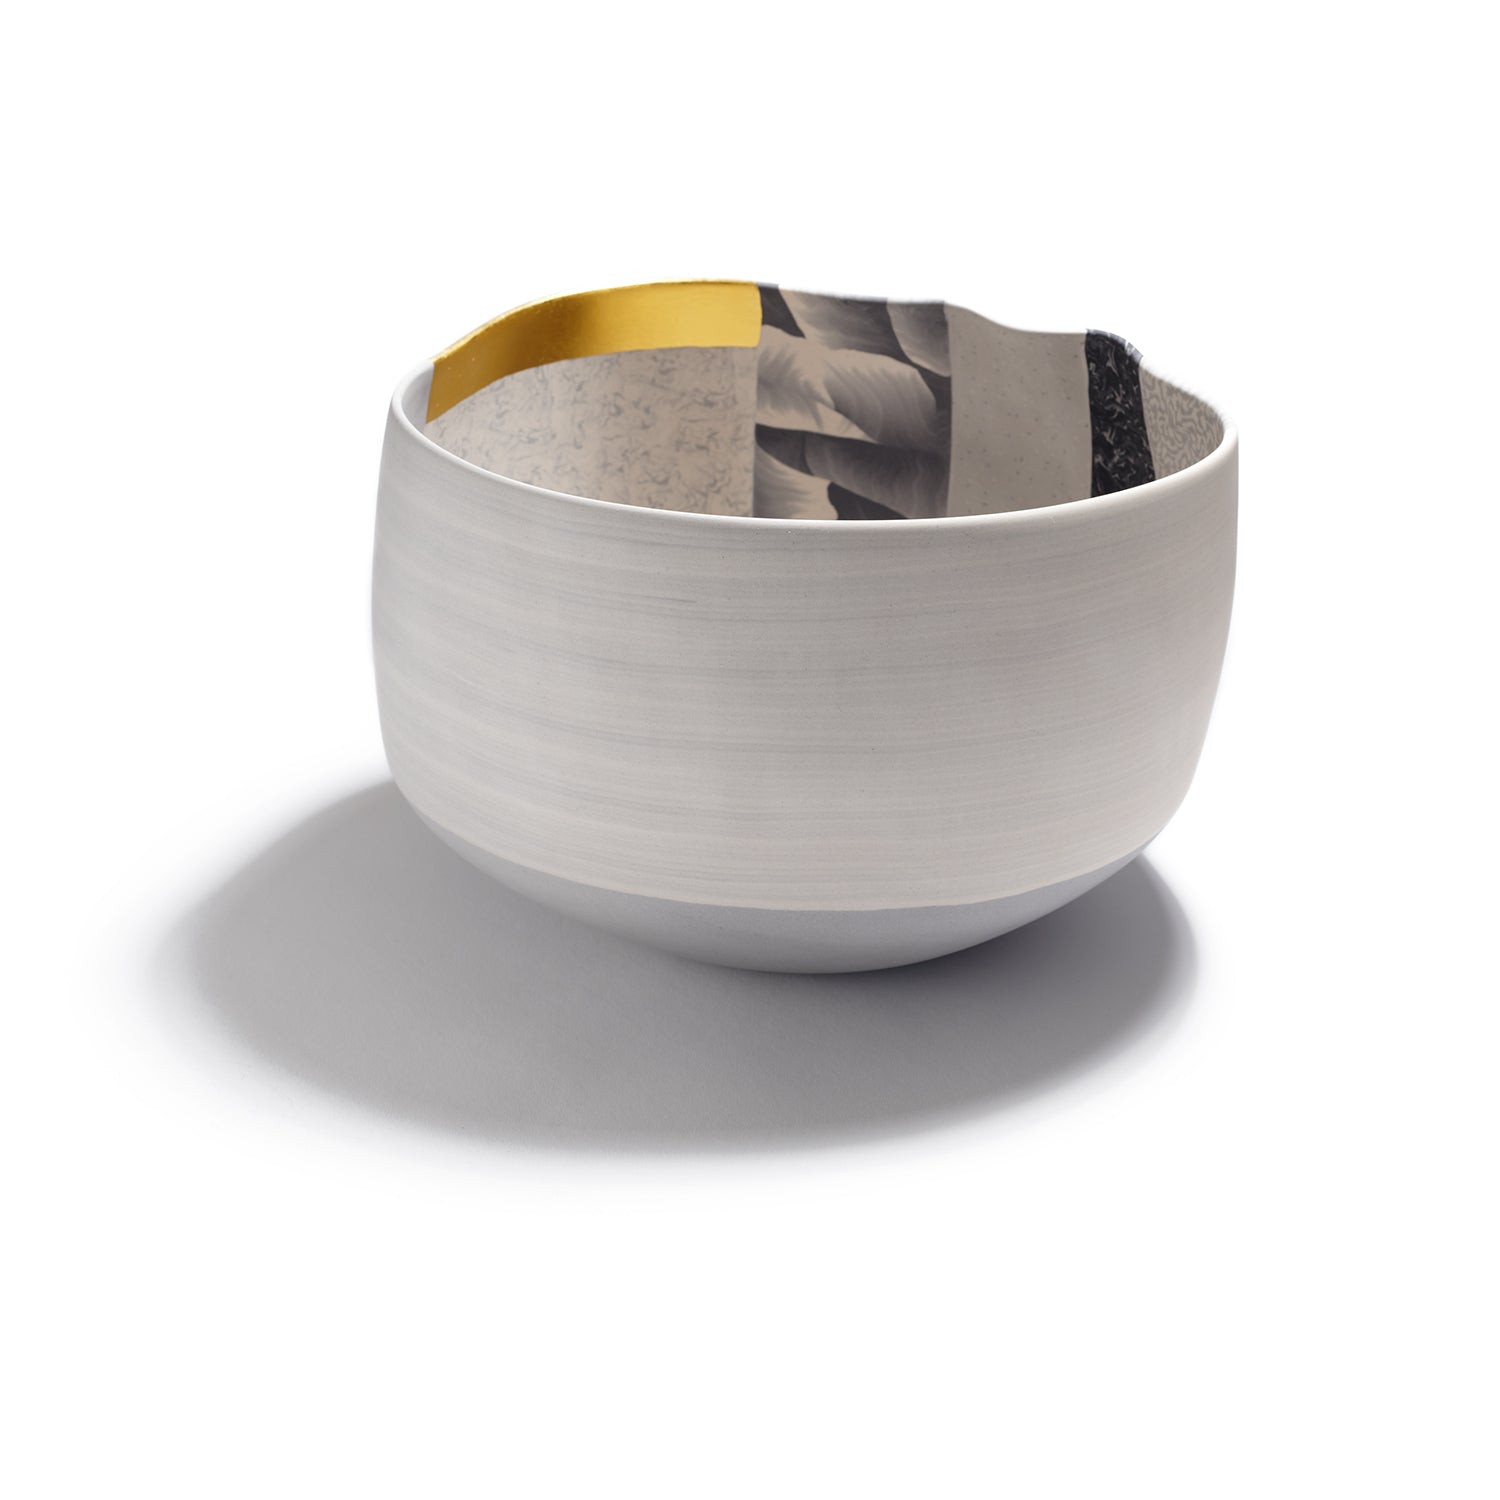 Medium Bowl with Gold Leaf II